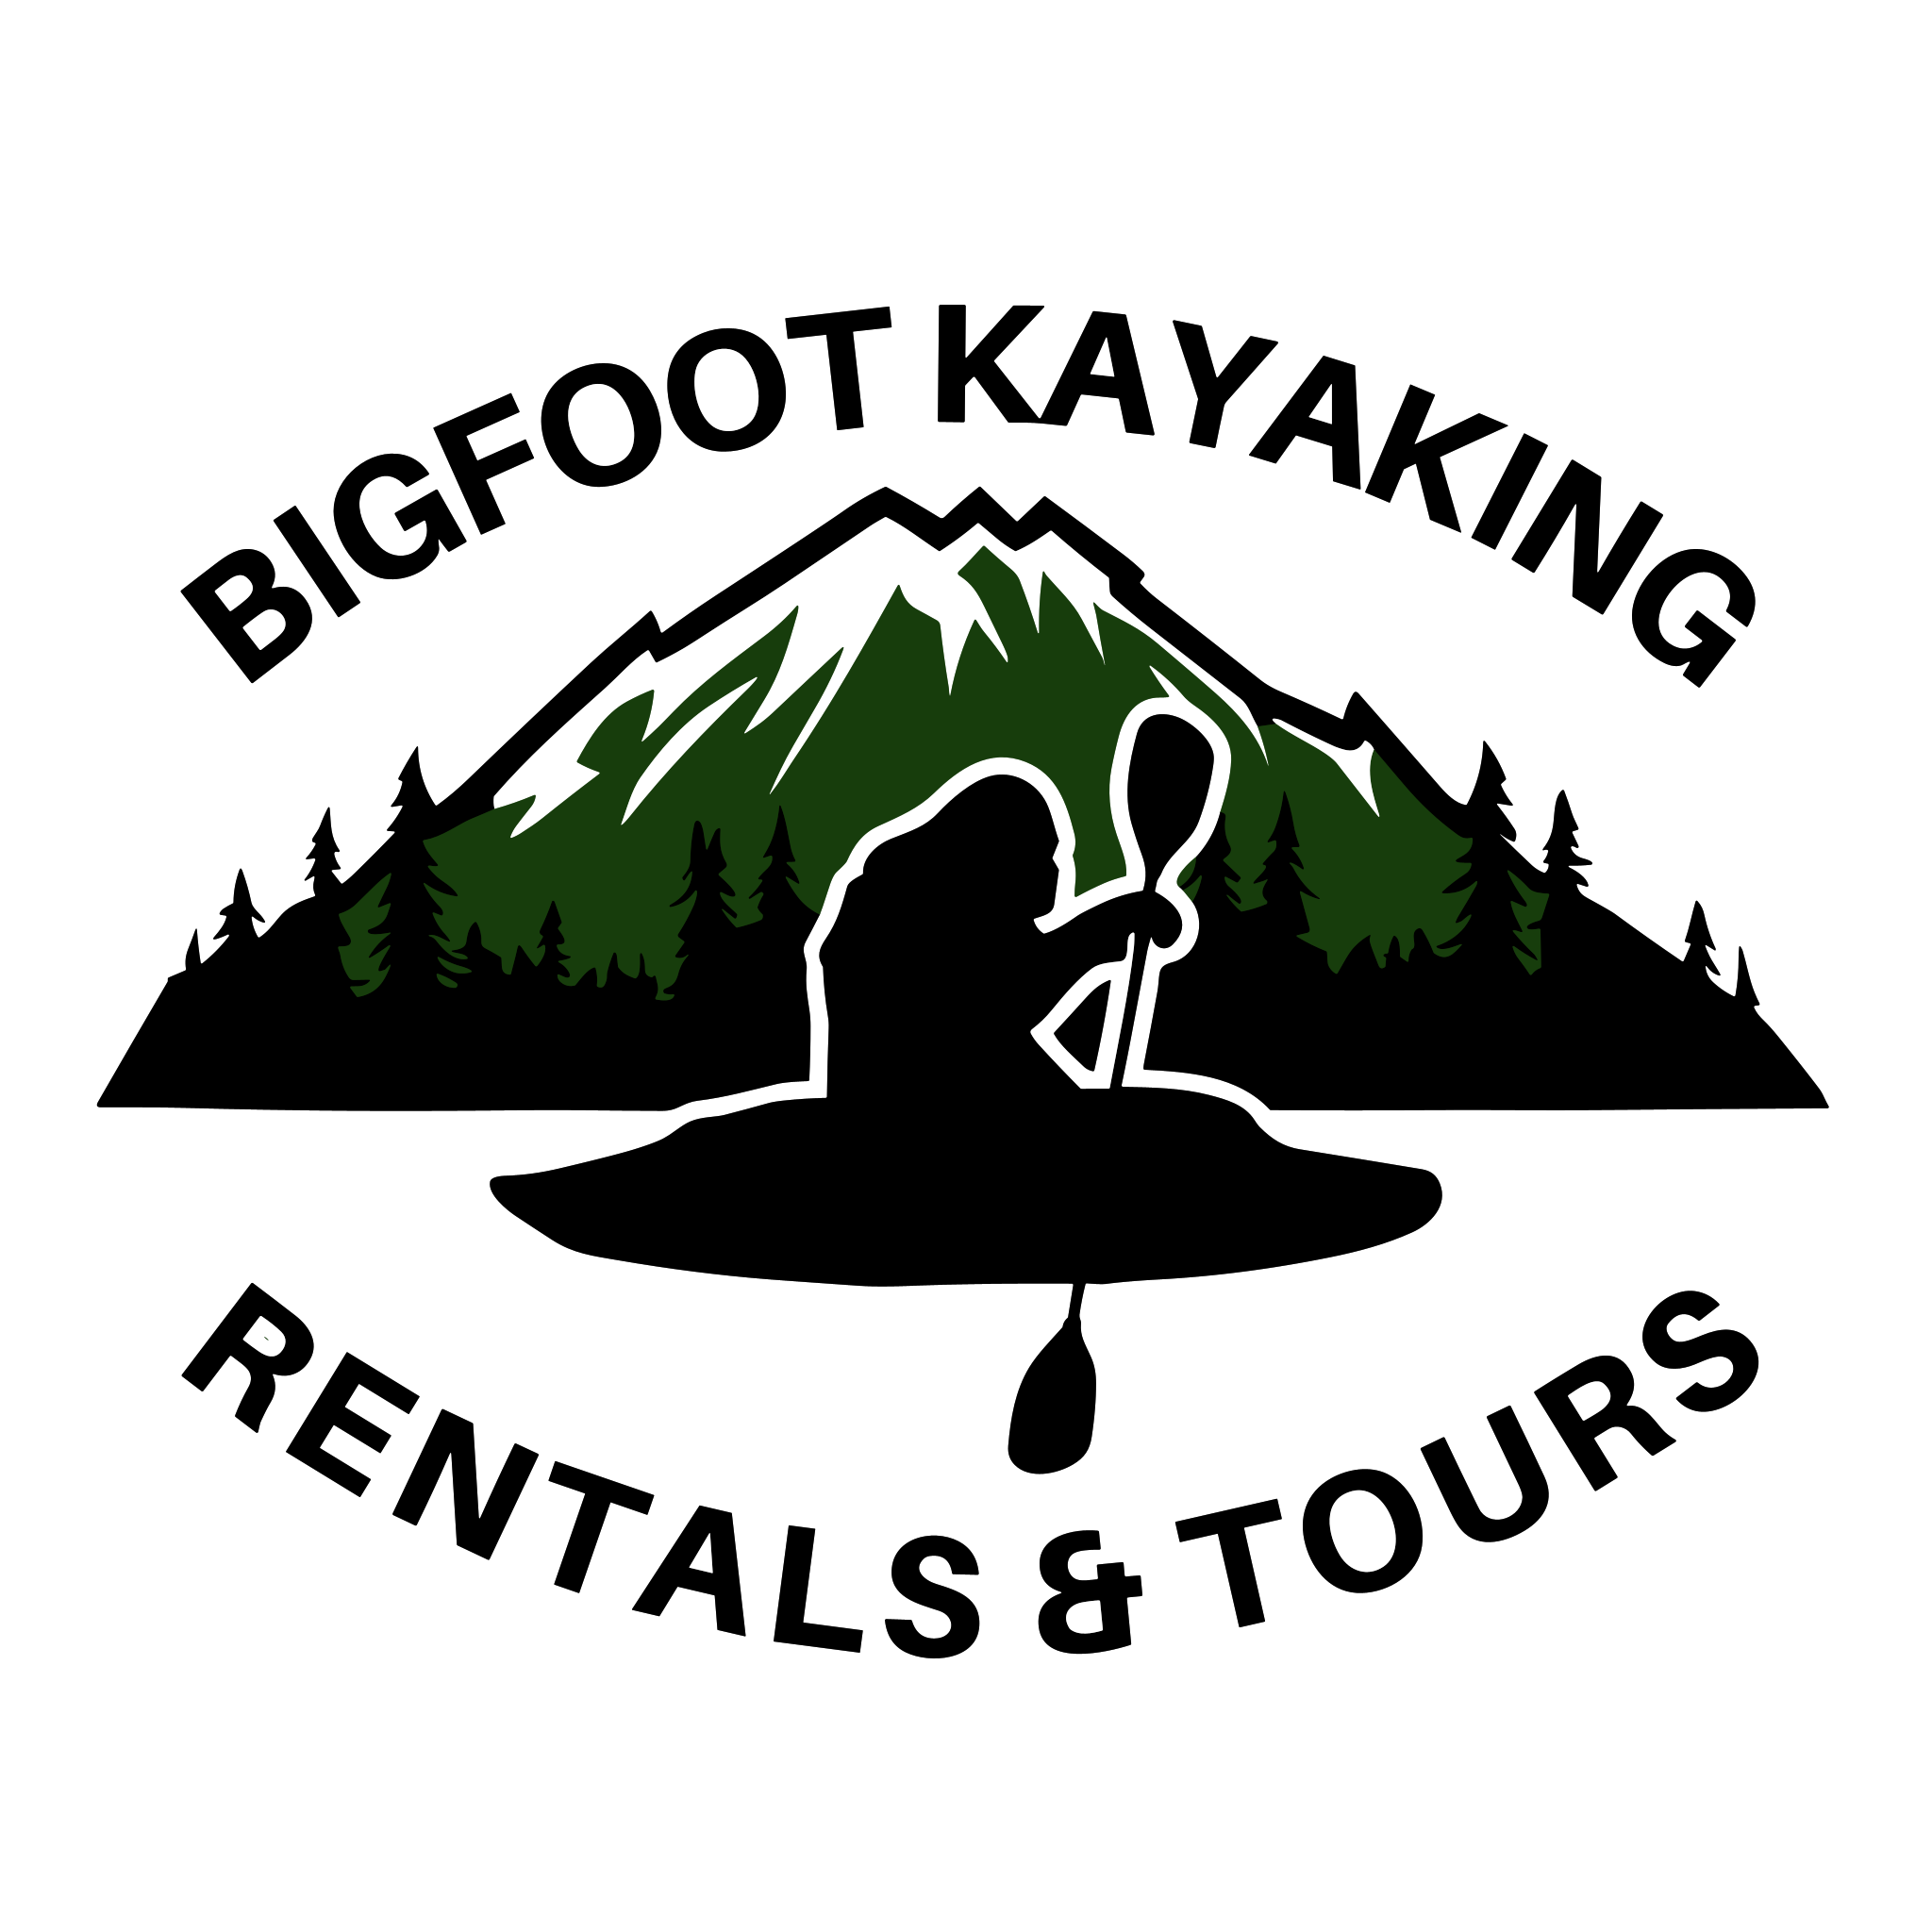 Bigfoot Kayaking Rentals and Tours Logo